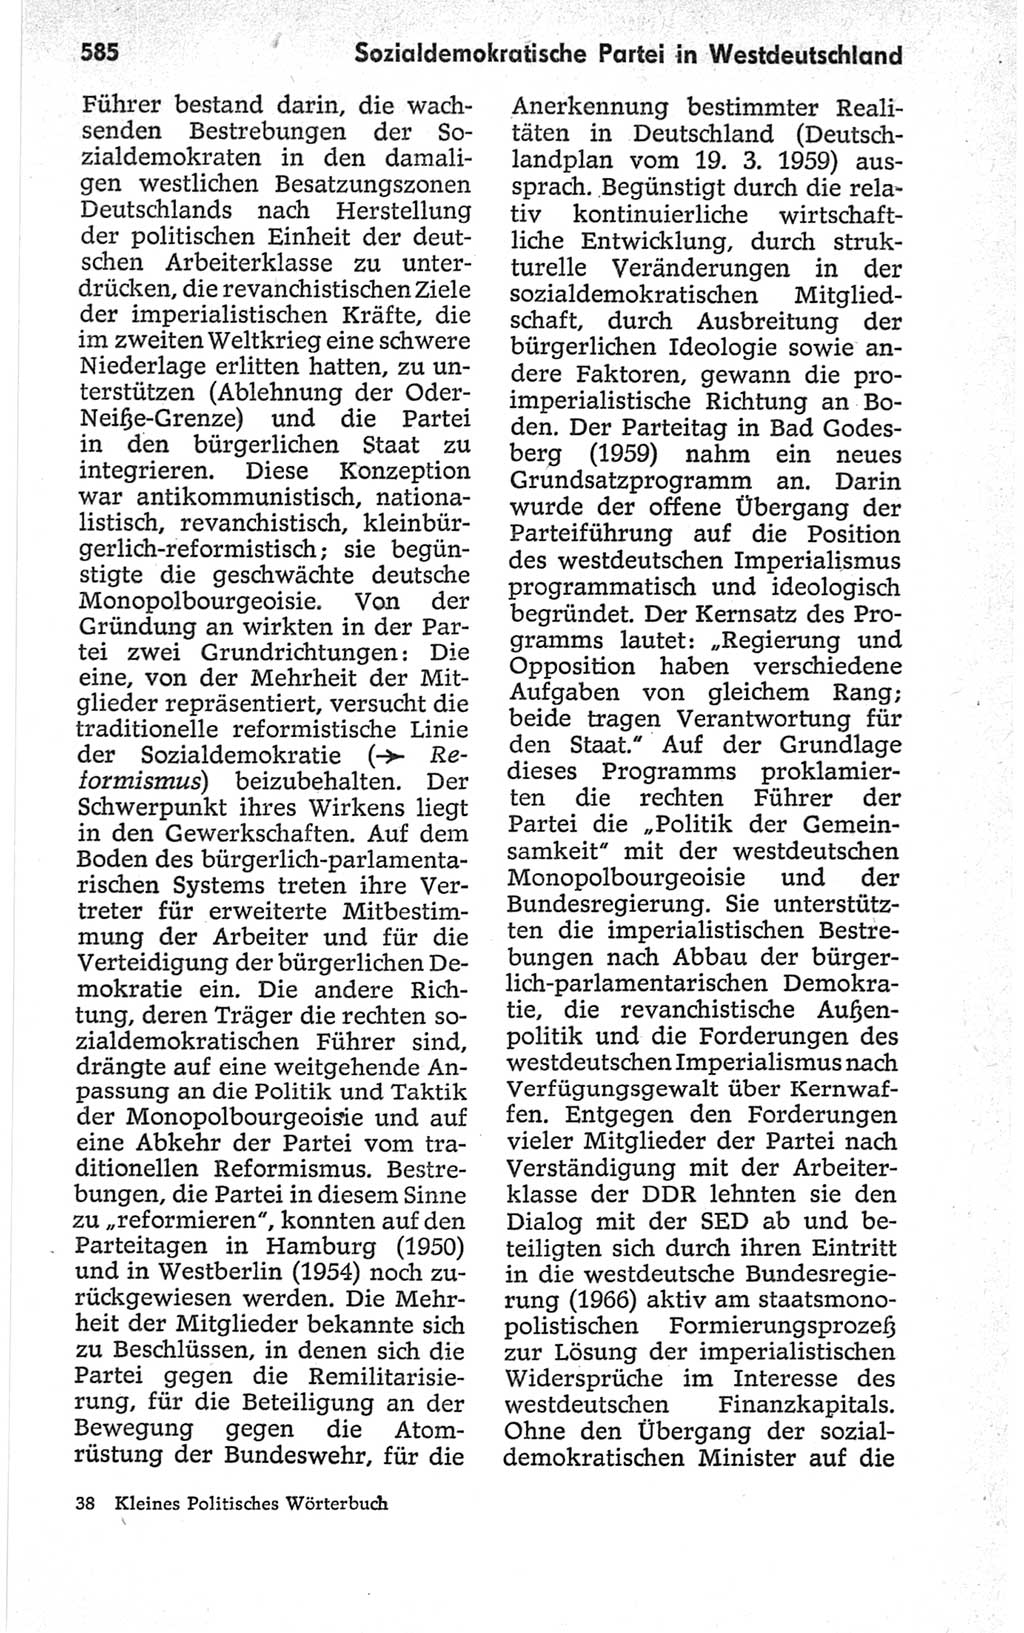 Kleines politisches Wörterbuch [Deutsche Demokratische Republik (DDR)] 1967, Seite 585 (Kl. pol. Wb. DDR 1967, S. 585)